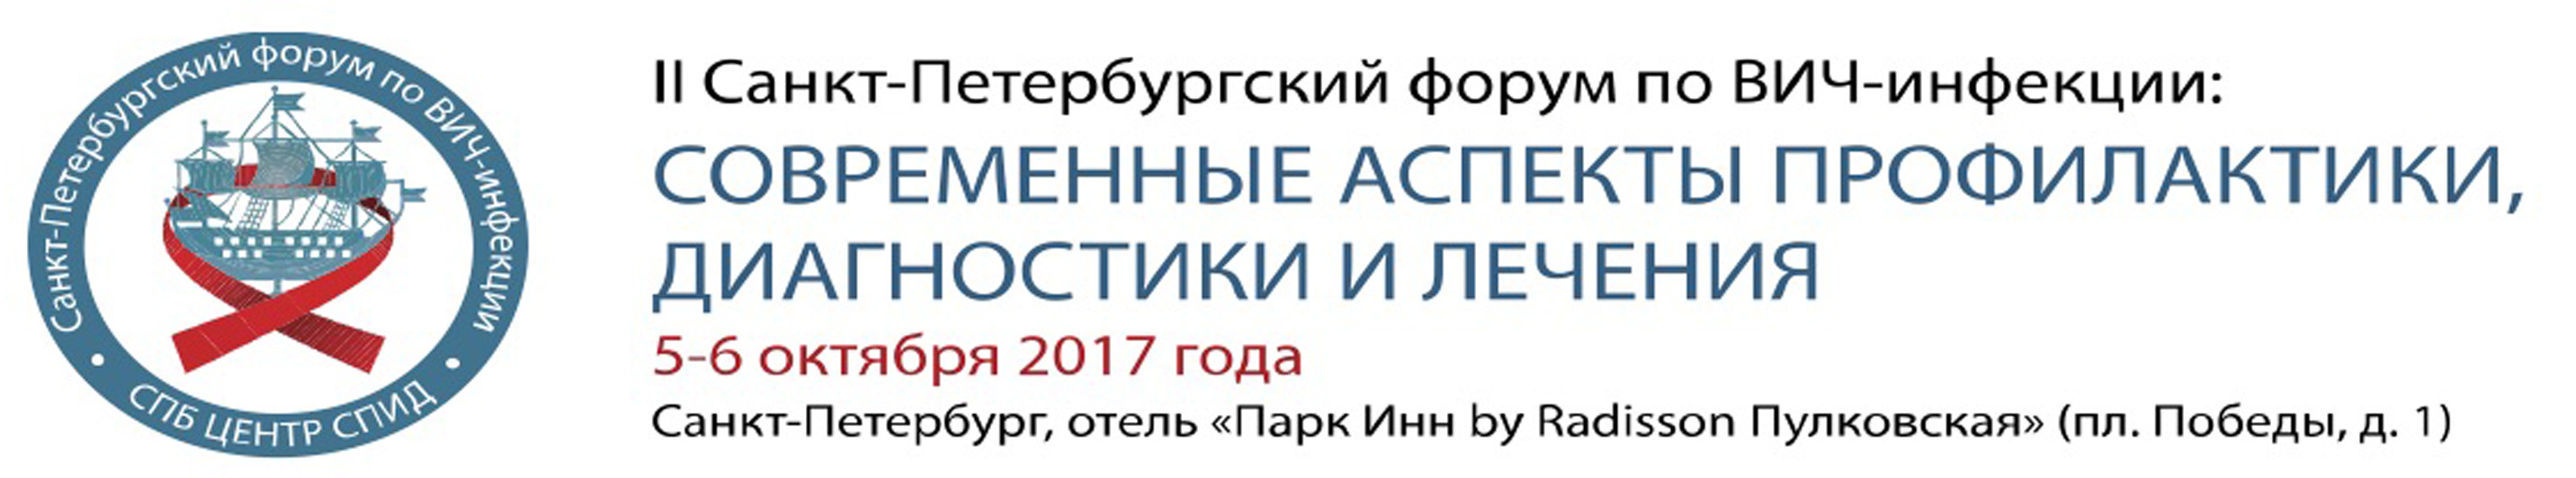 II Санкт-Петербургский форум по ВИЧ-инфекции: современные аспекты профилактики, диагностики и лечения